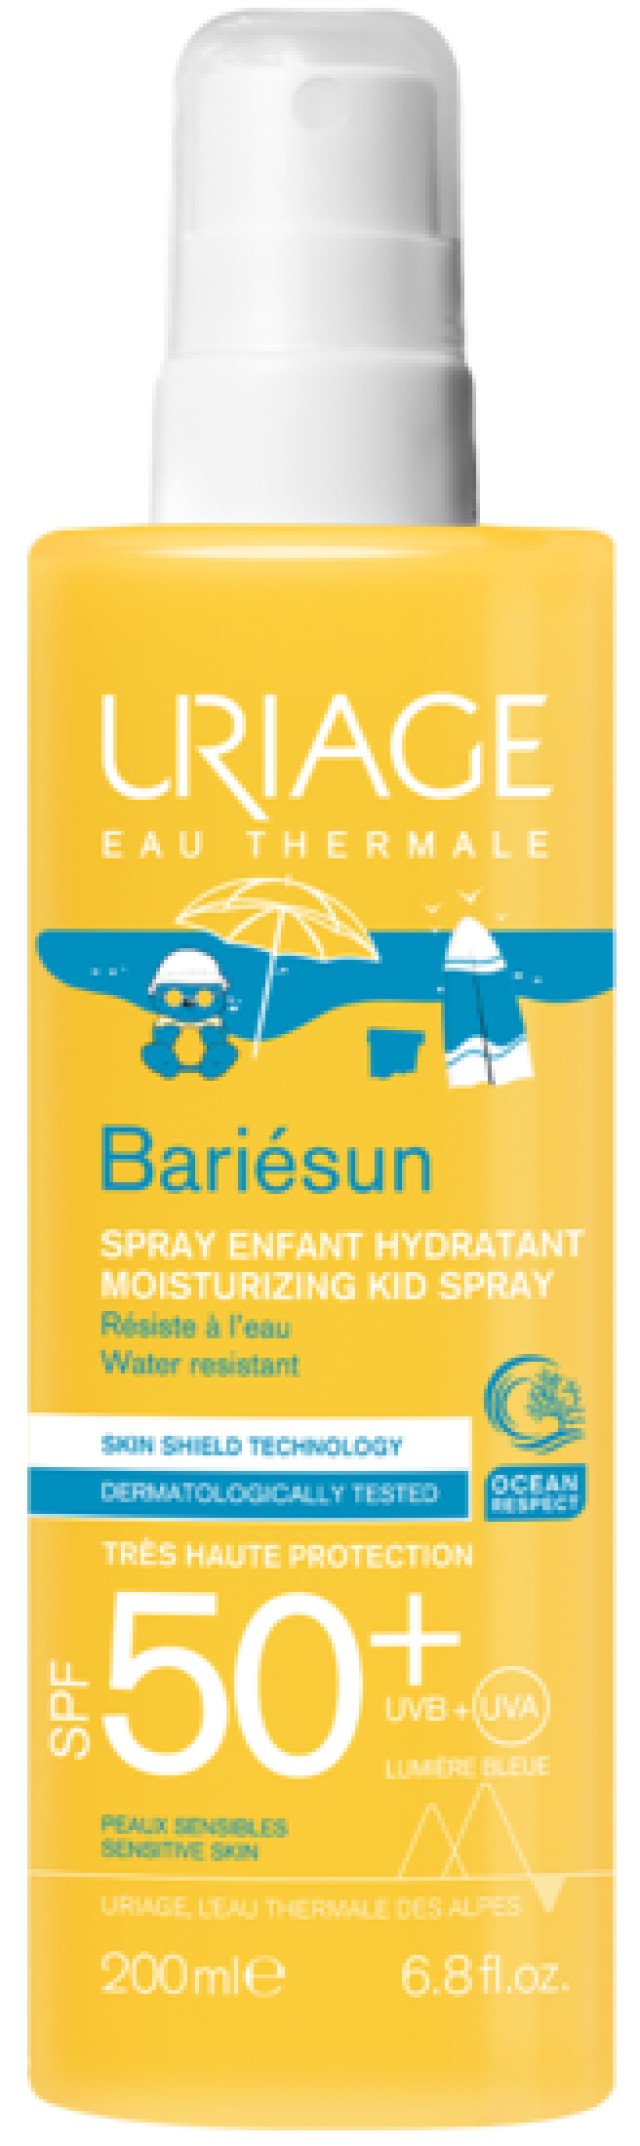 Uriage Bariesun Moisturizing Kid Spray SPF50+ 200ml